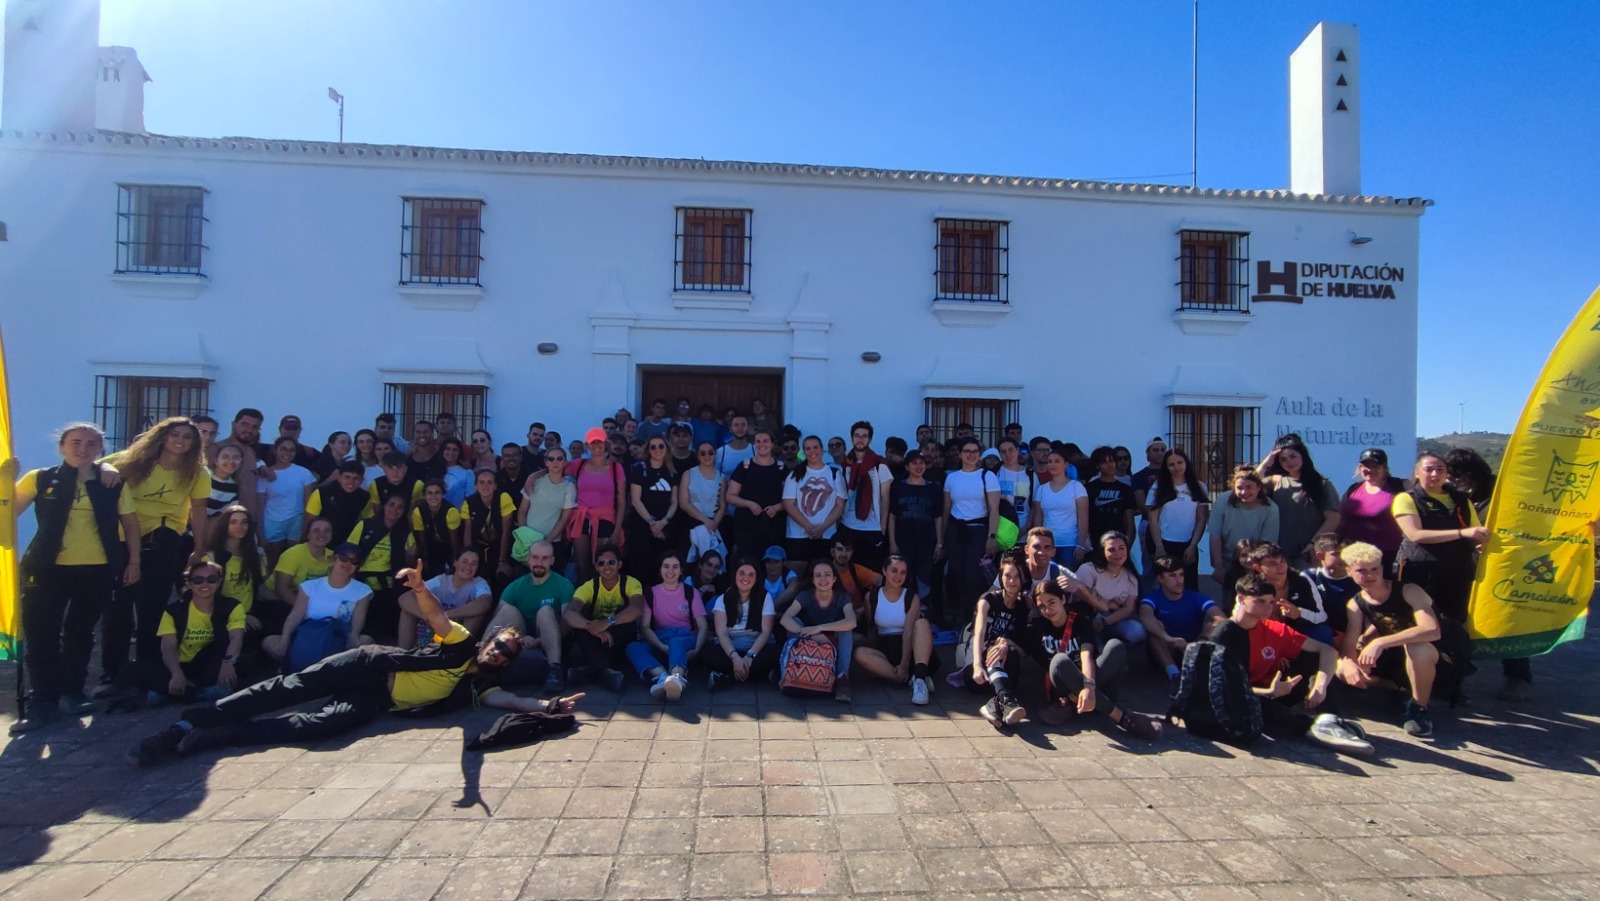 Casi 150 jóvenes de la provincia de Huelva participan en la convivencia Juventud Activa, organizada por los GDR de la provincia